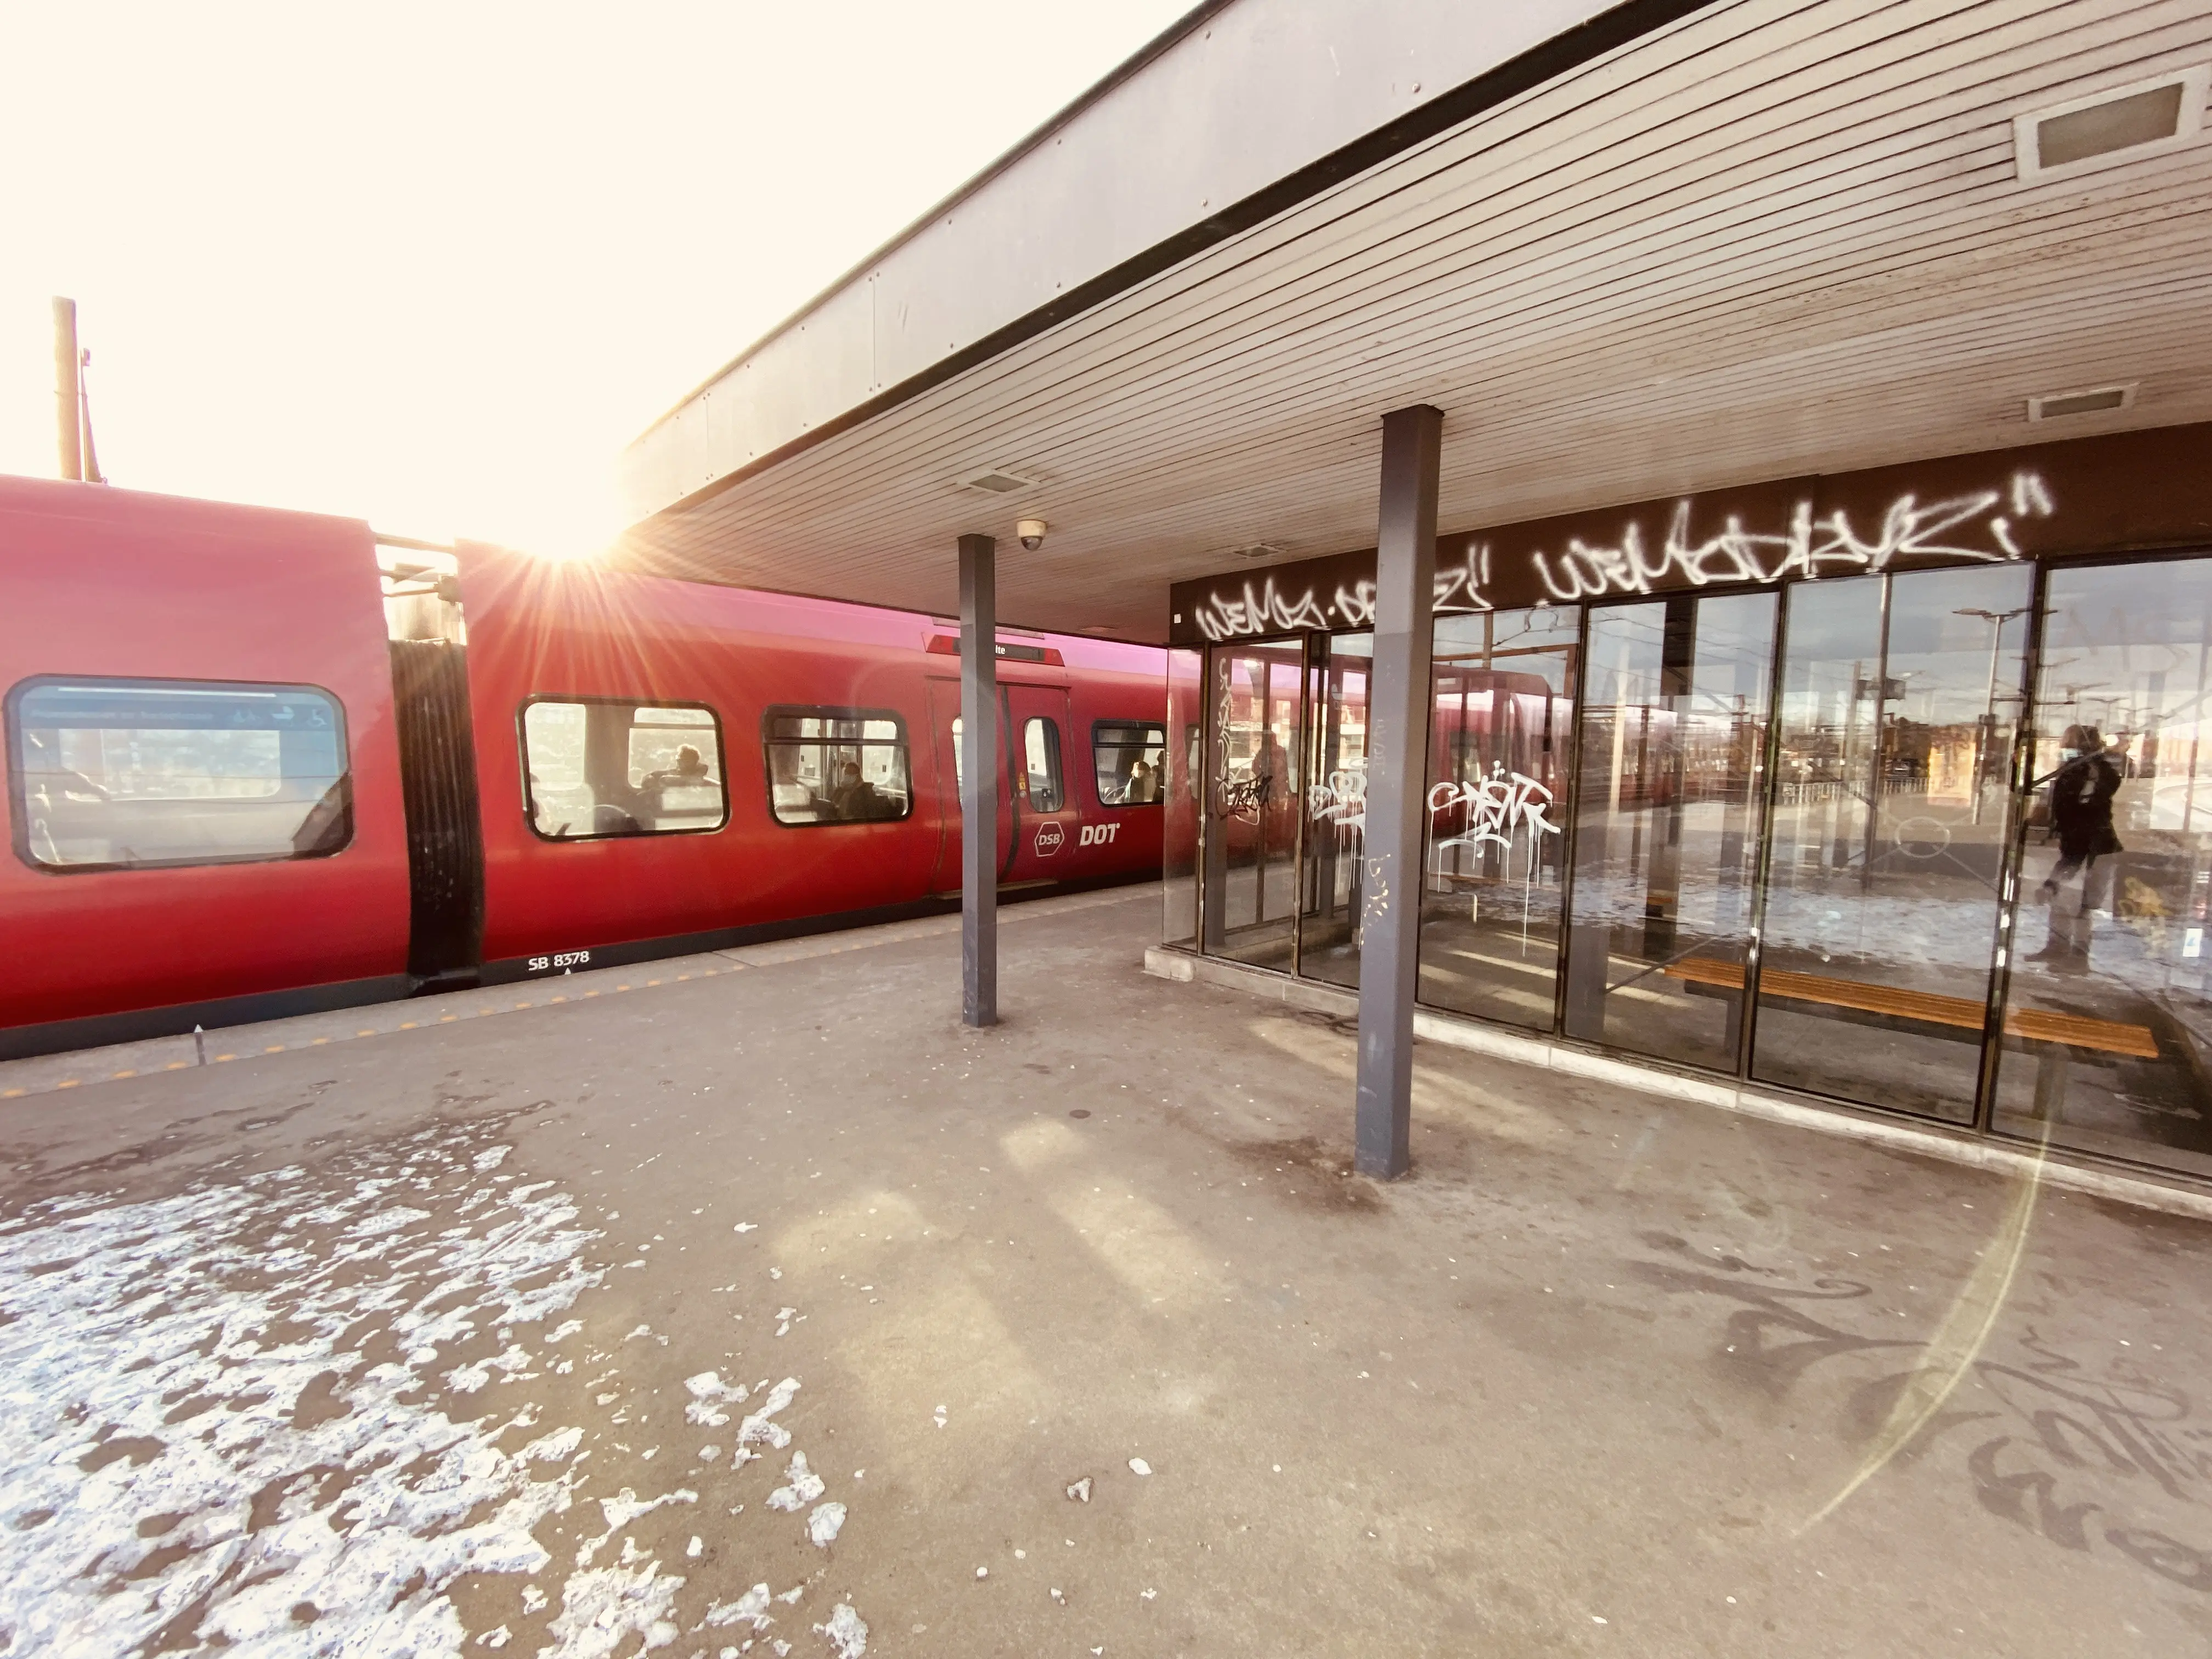 Billede af Sydhavn S-togstrinbræt.